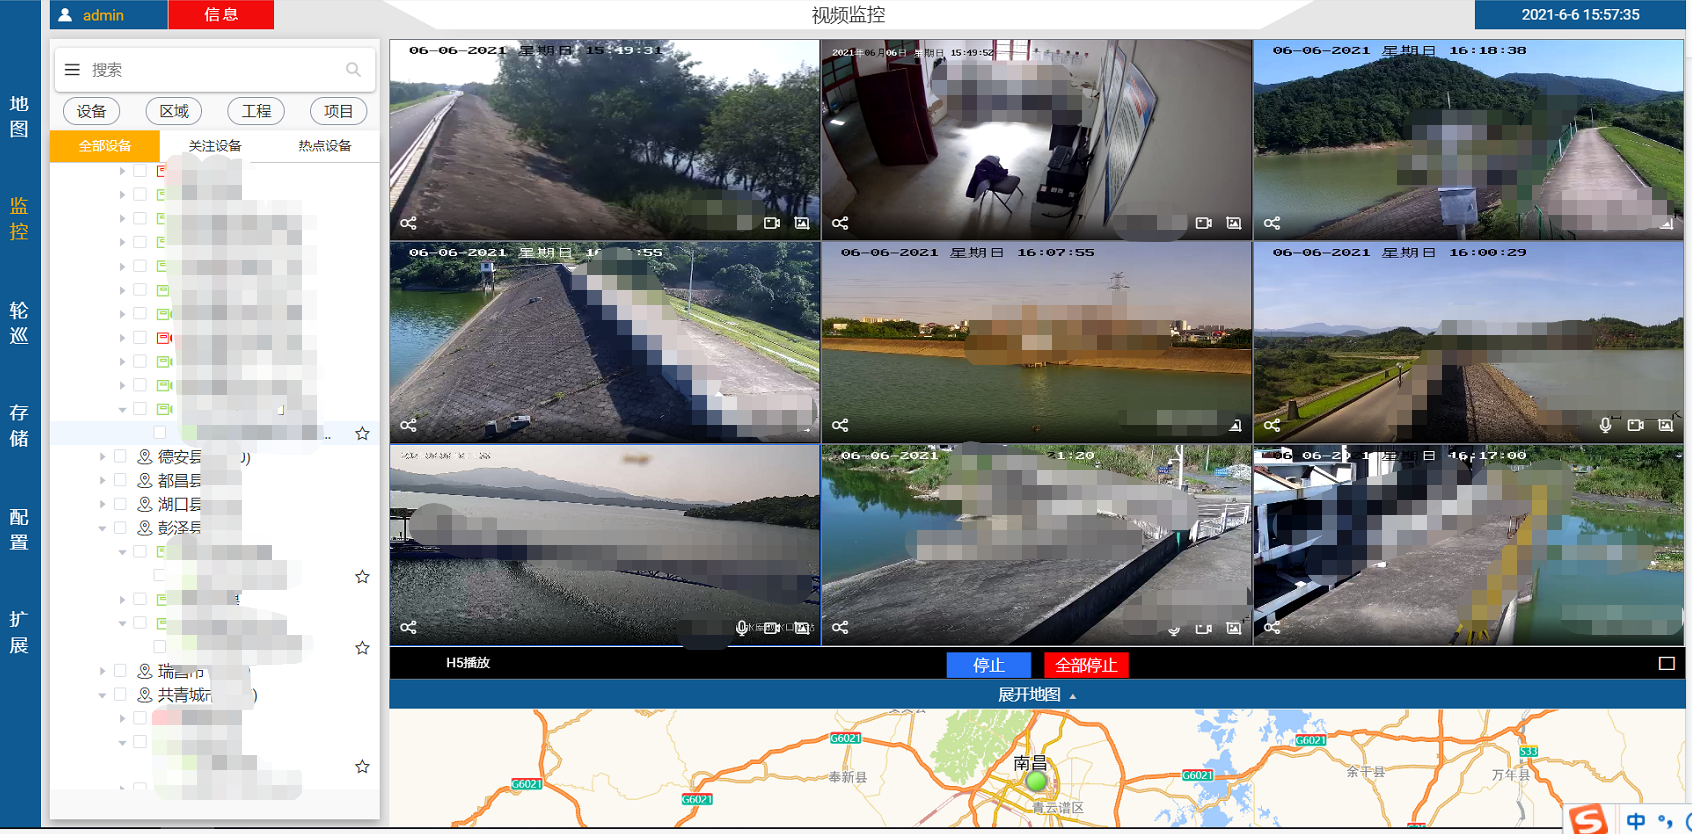 视频监控流媒体平台 / 远程指挥调度平台图片